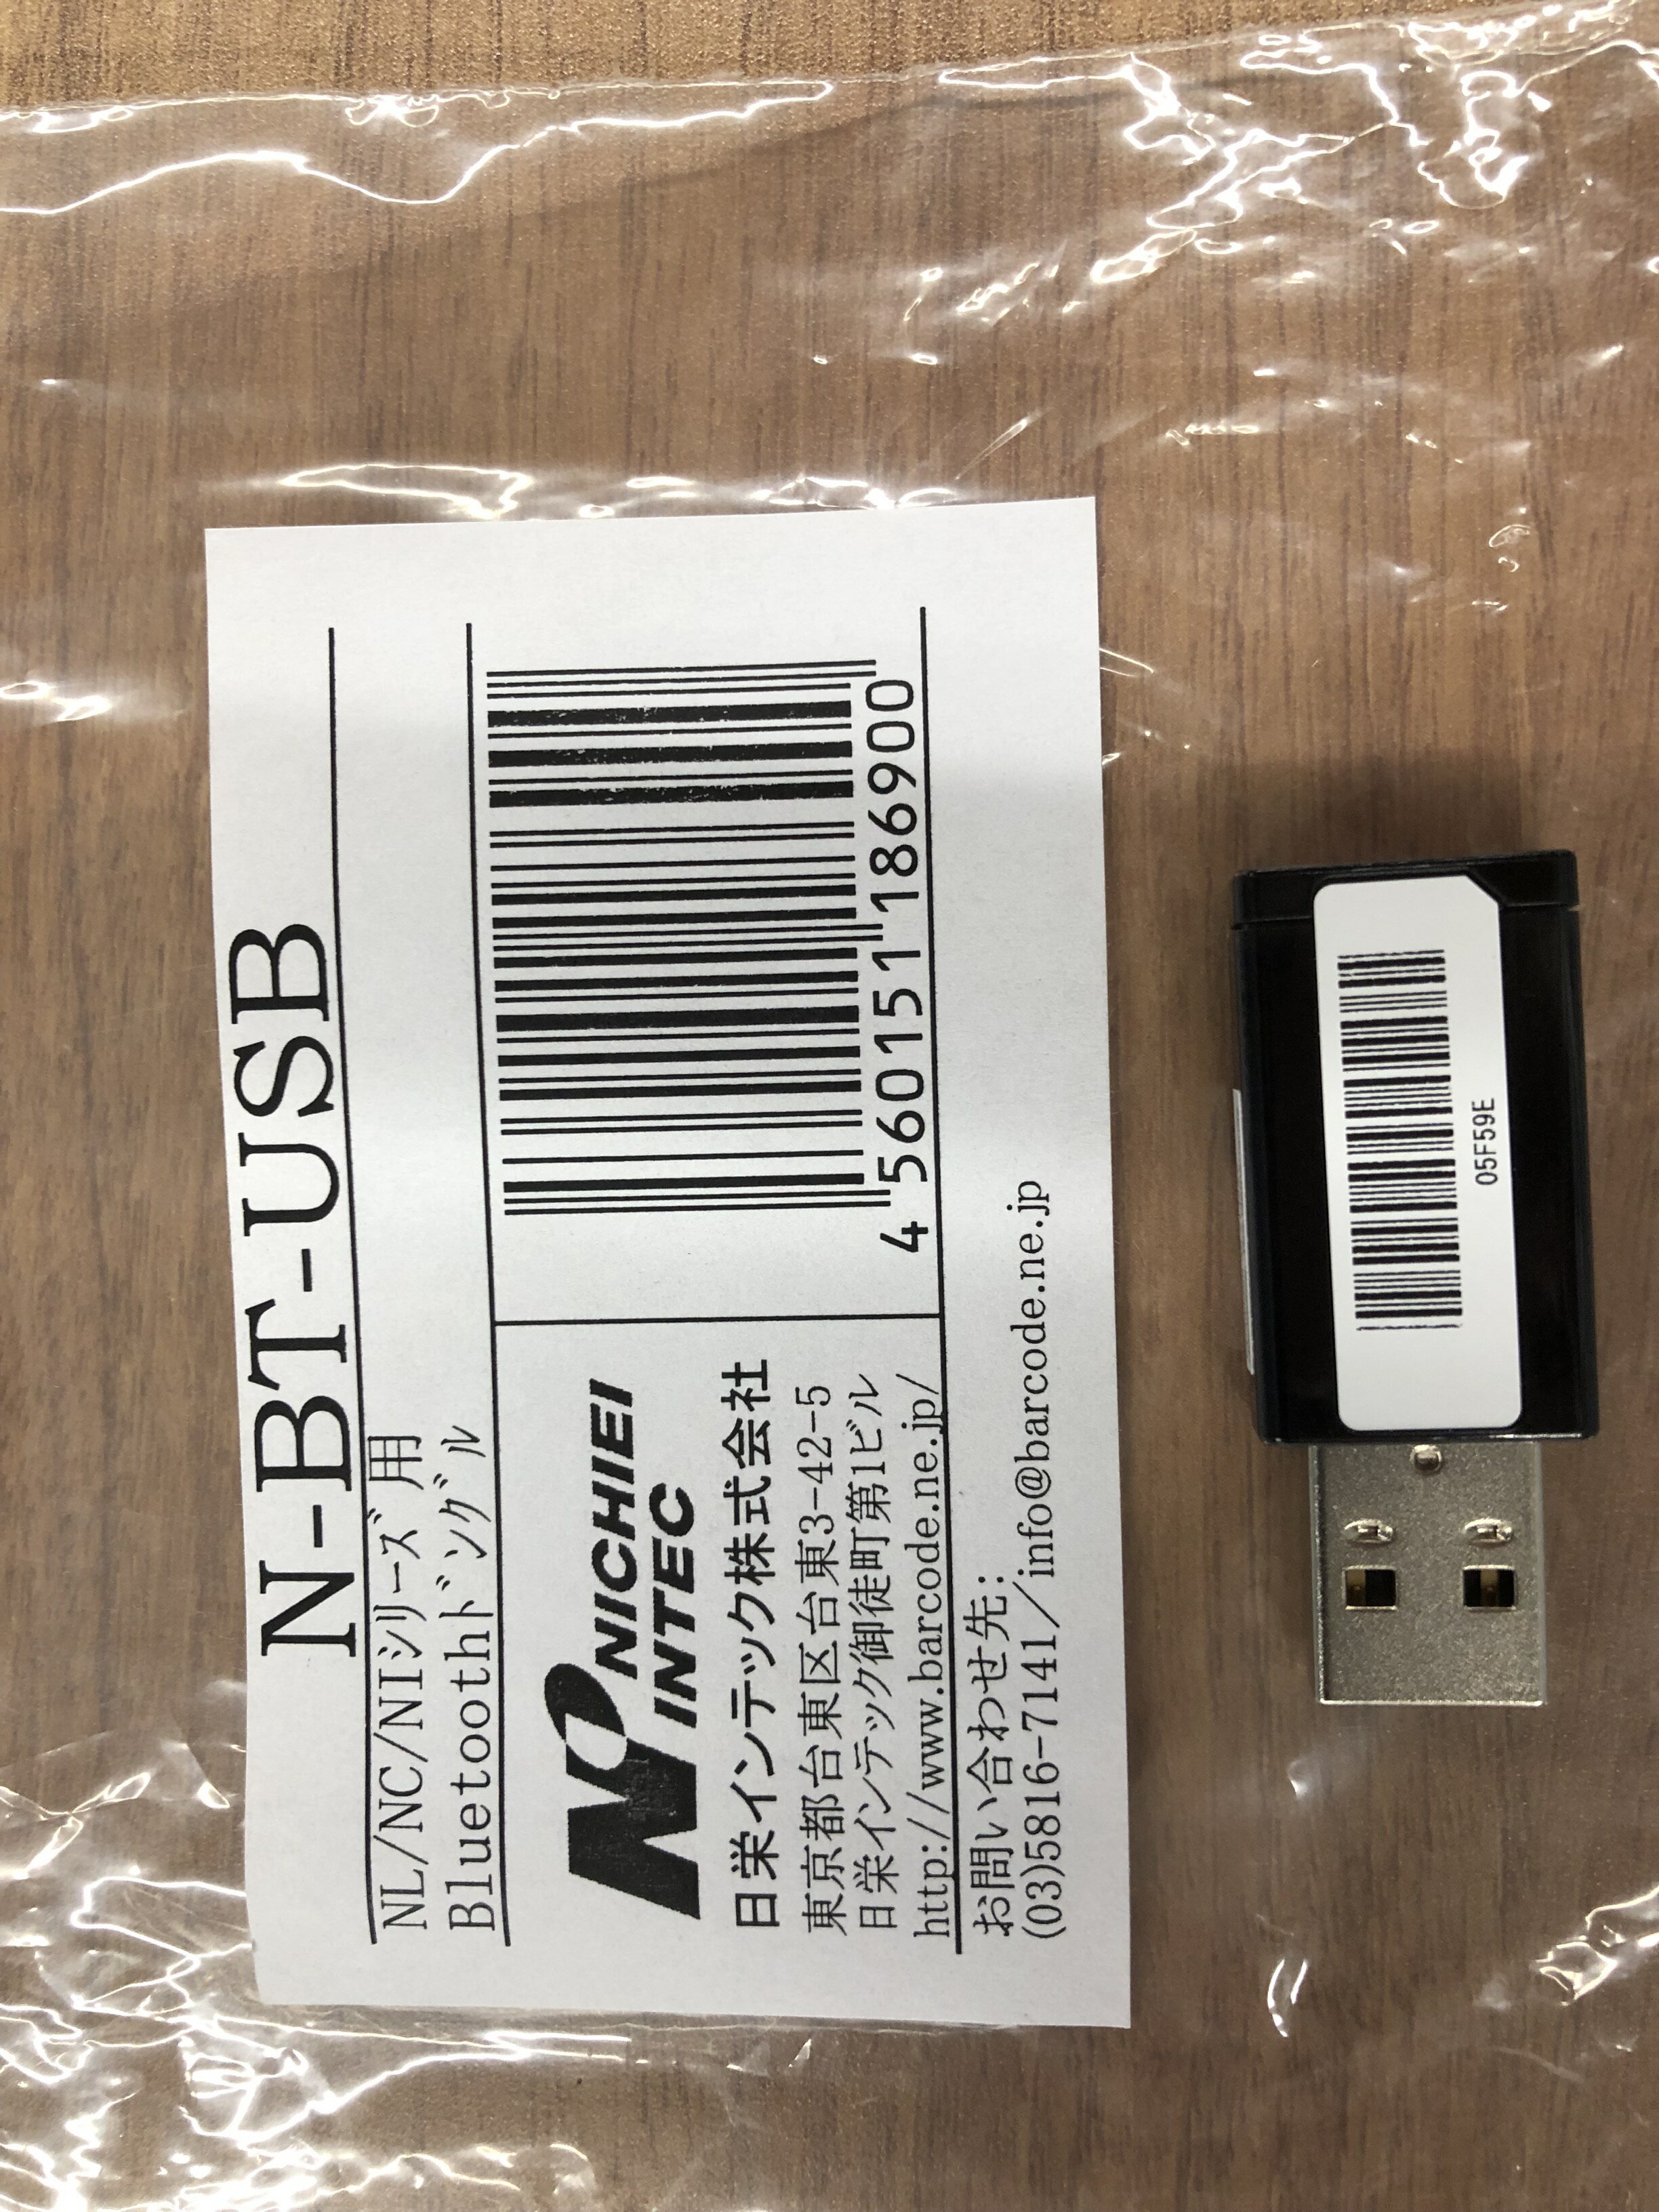 【★訳あり品】日栄インテック オプション:BluetoothスキャナNC/NL/NIシリーズ用USBドングル N-BT-USB